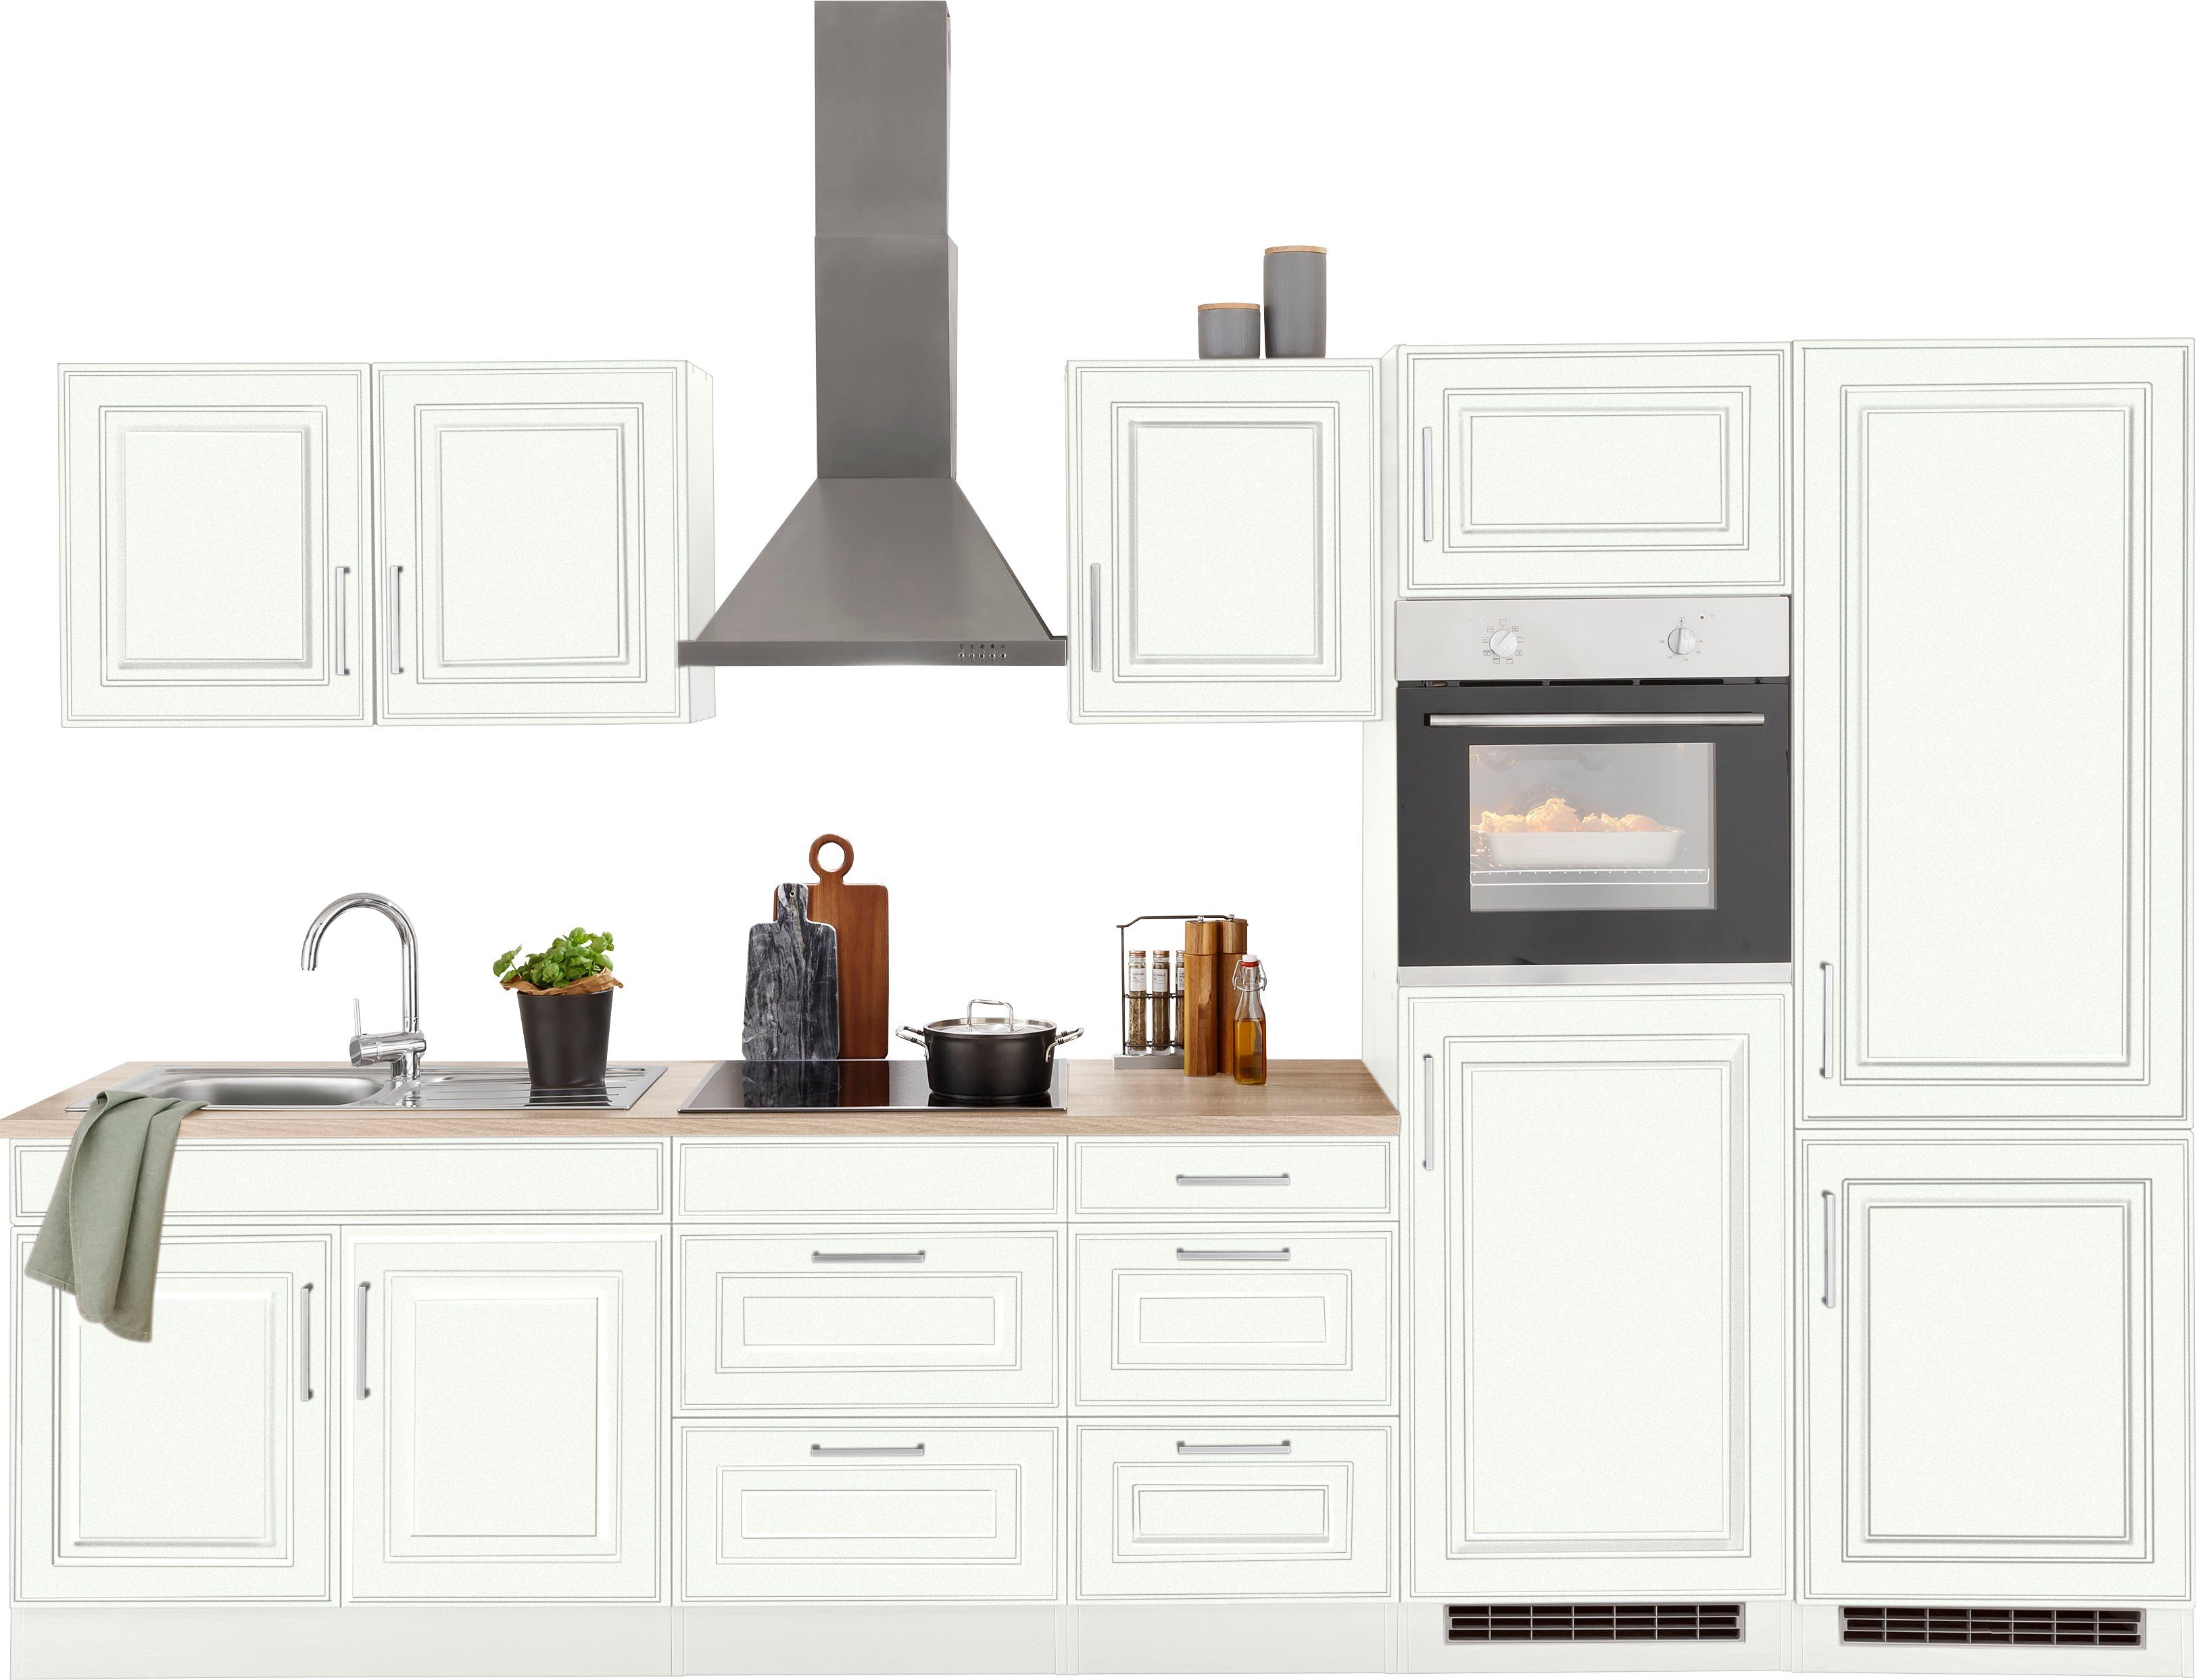 HELD MÖBEL Küchenzeile Stockholm, Breite 330 cm, mit hochwertigen MDF Fronten im Landhaus-Stil weiß